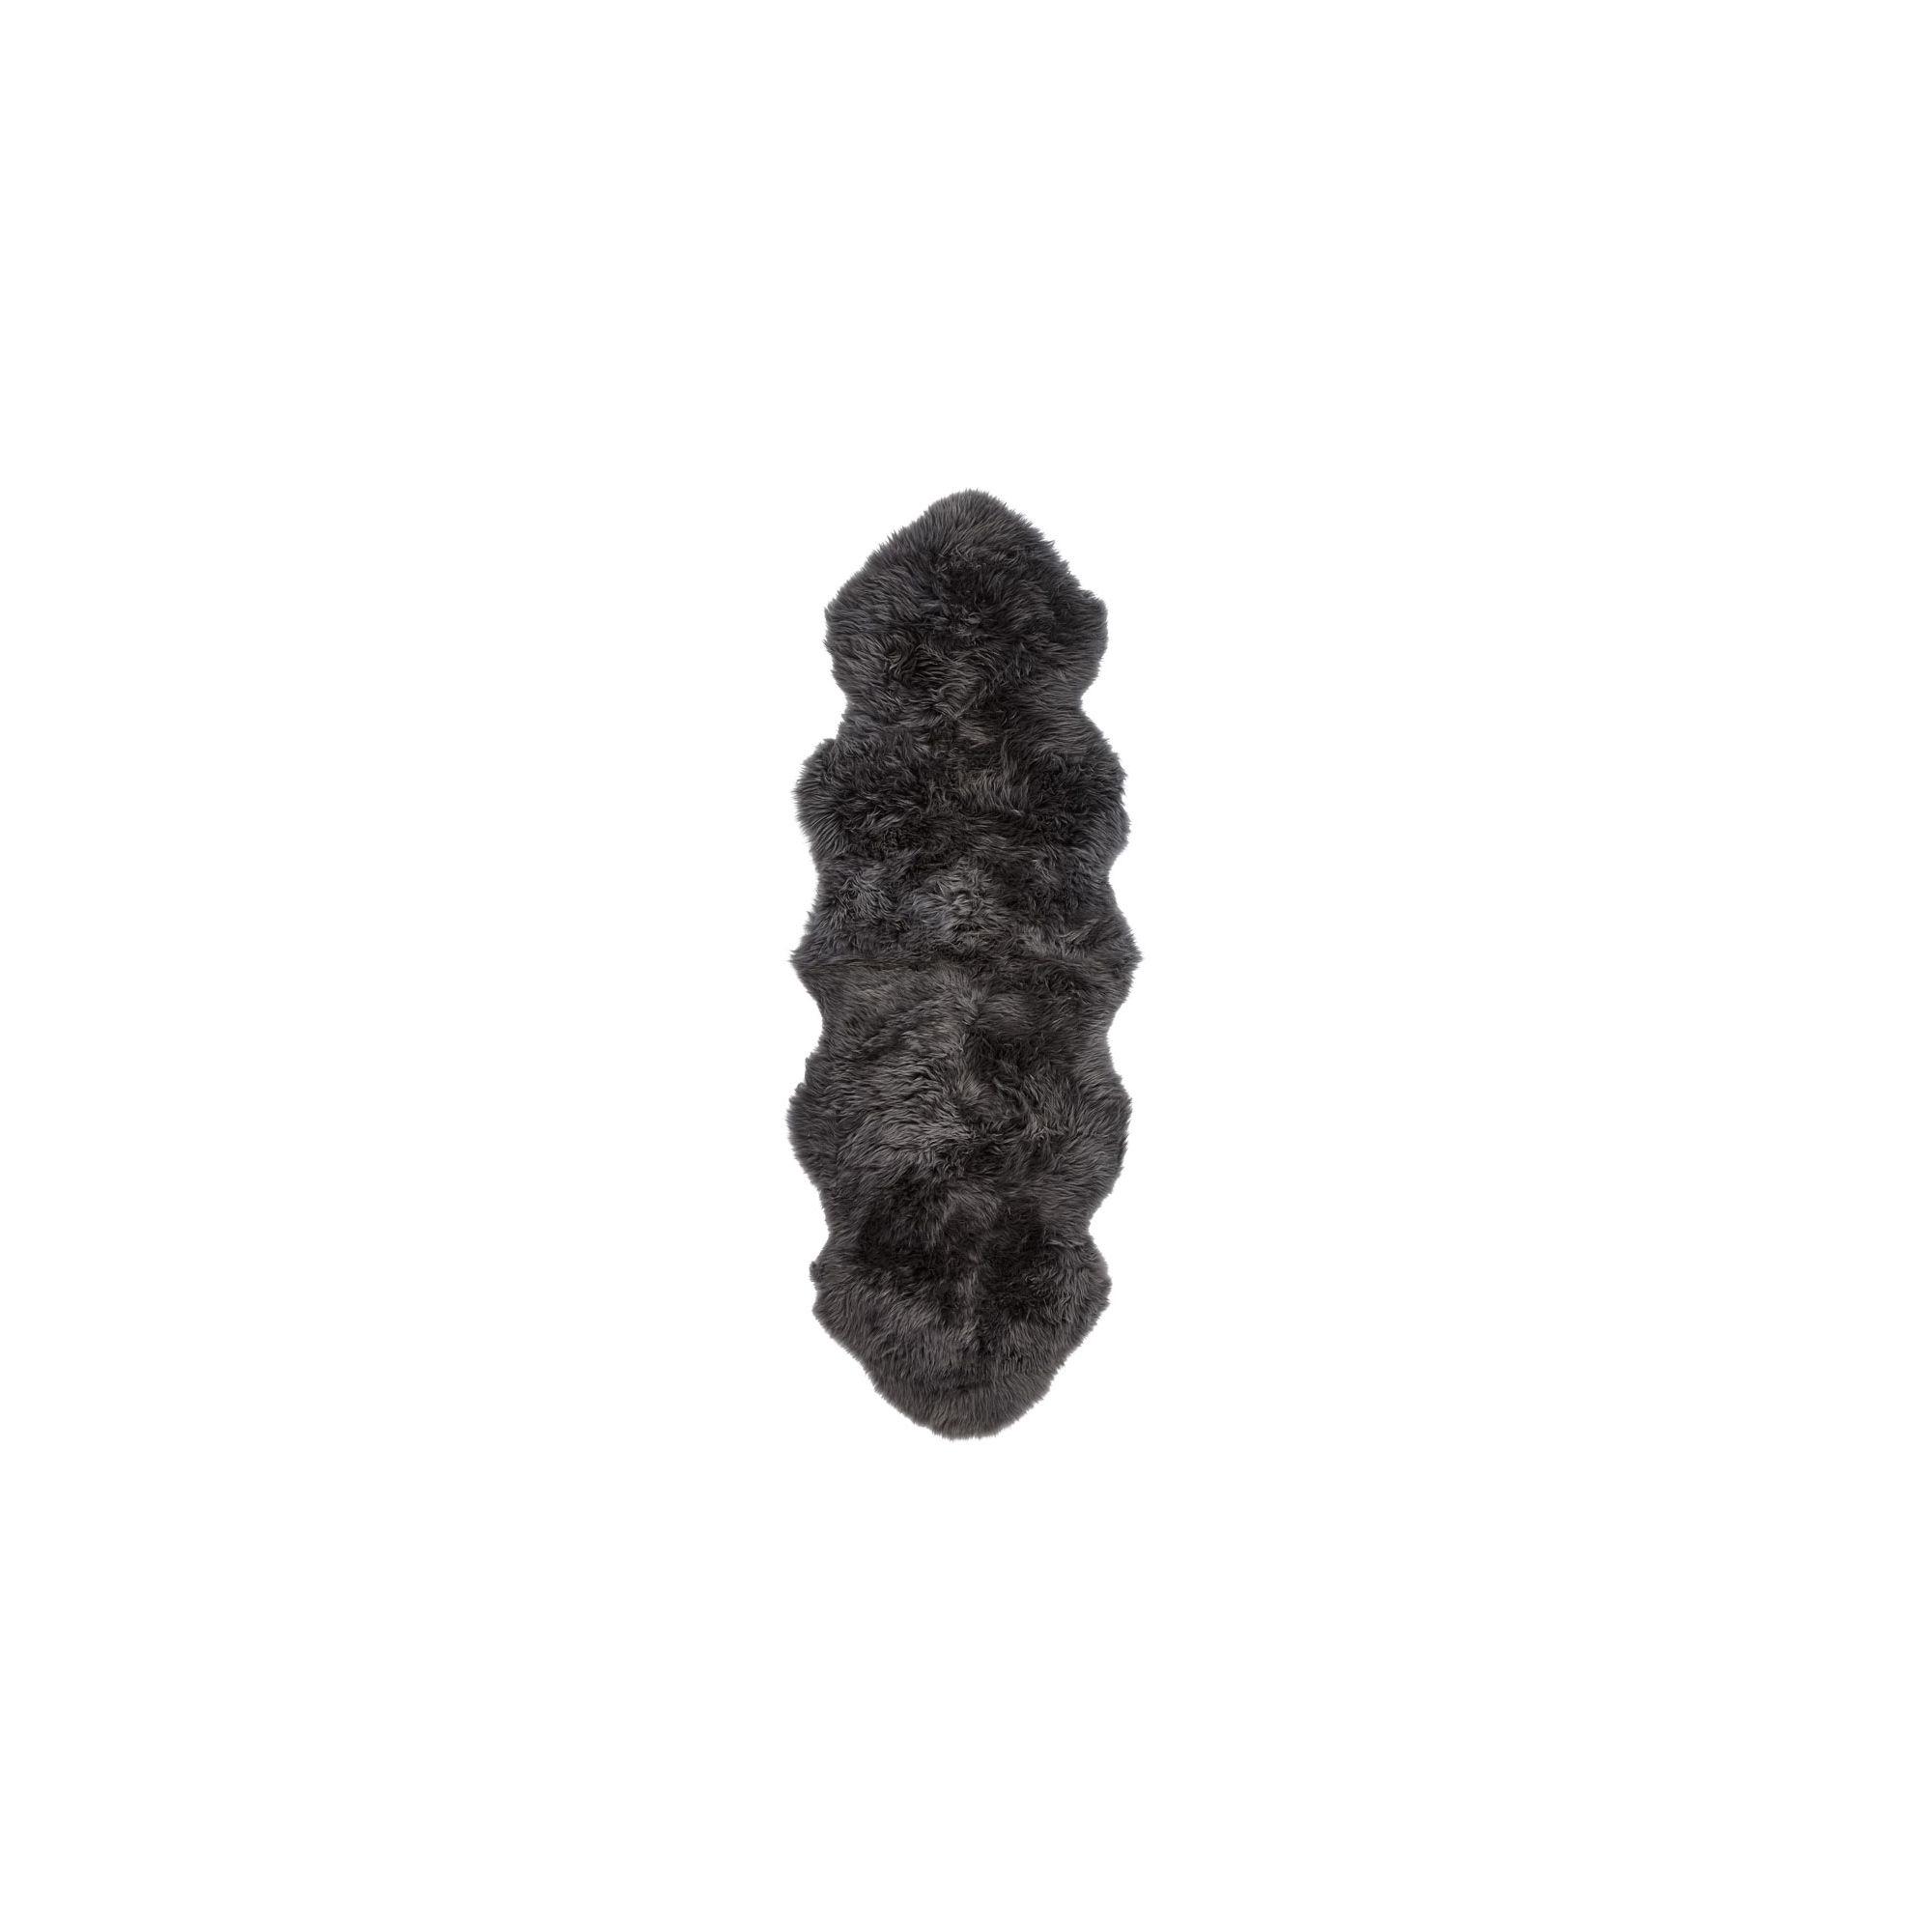  Newzealandsk Fåreskind 180 cm, Long Wool fra Natures Collection (Varenr: NCL1024)